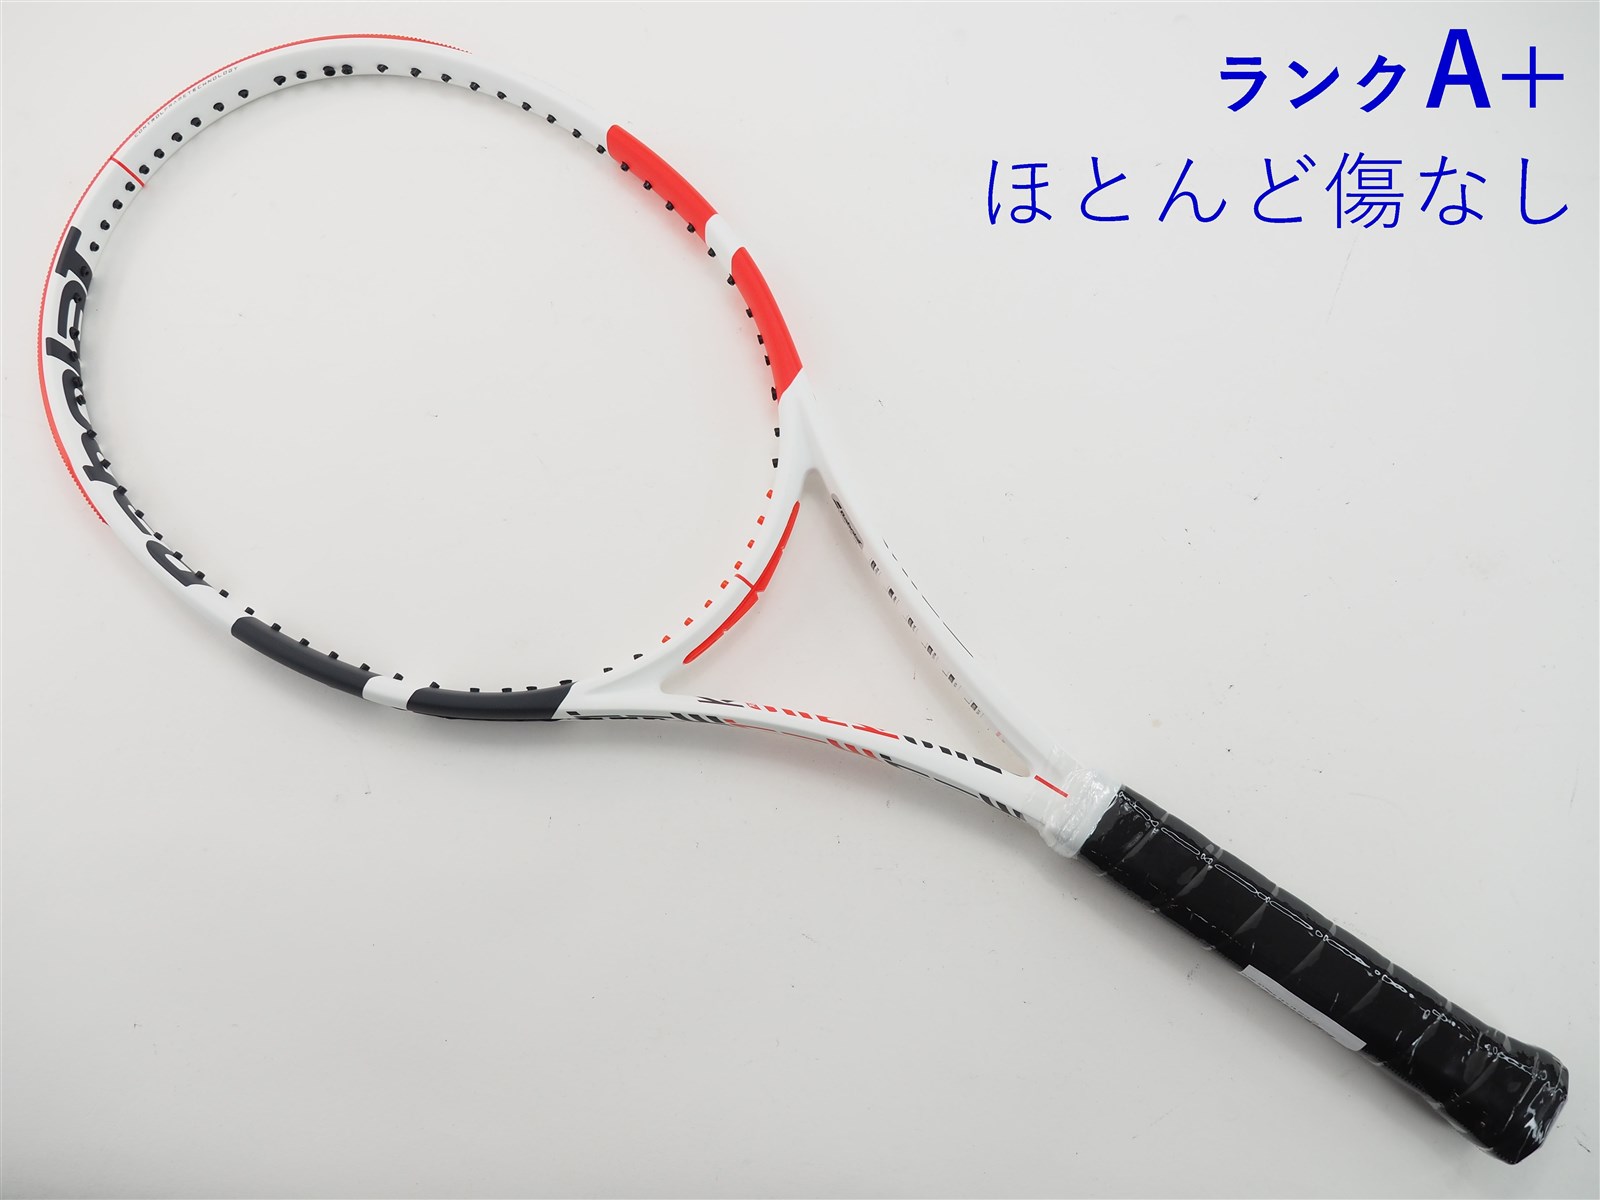 テニスラケット バボラ ピュア ストライク 16×19 2017年モデル (G3